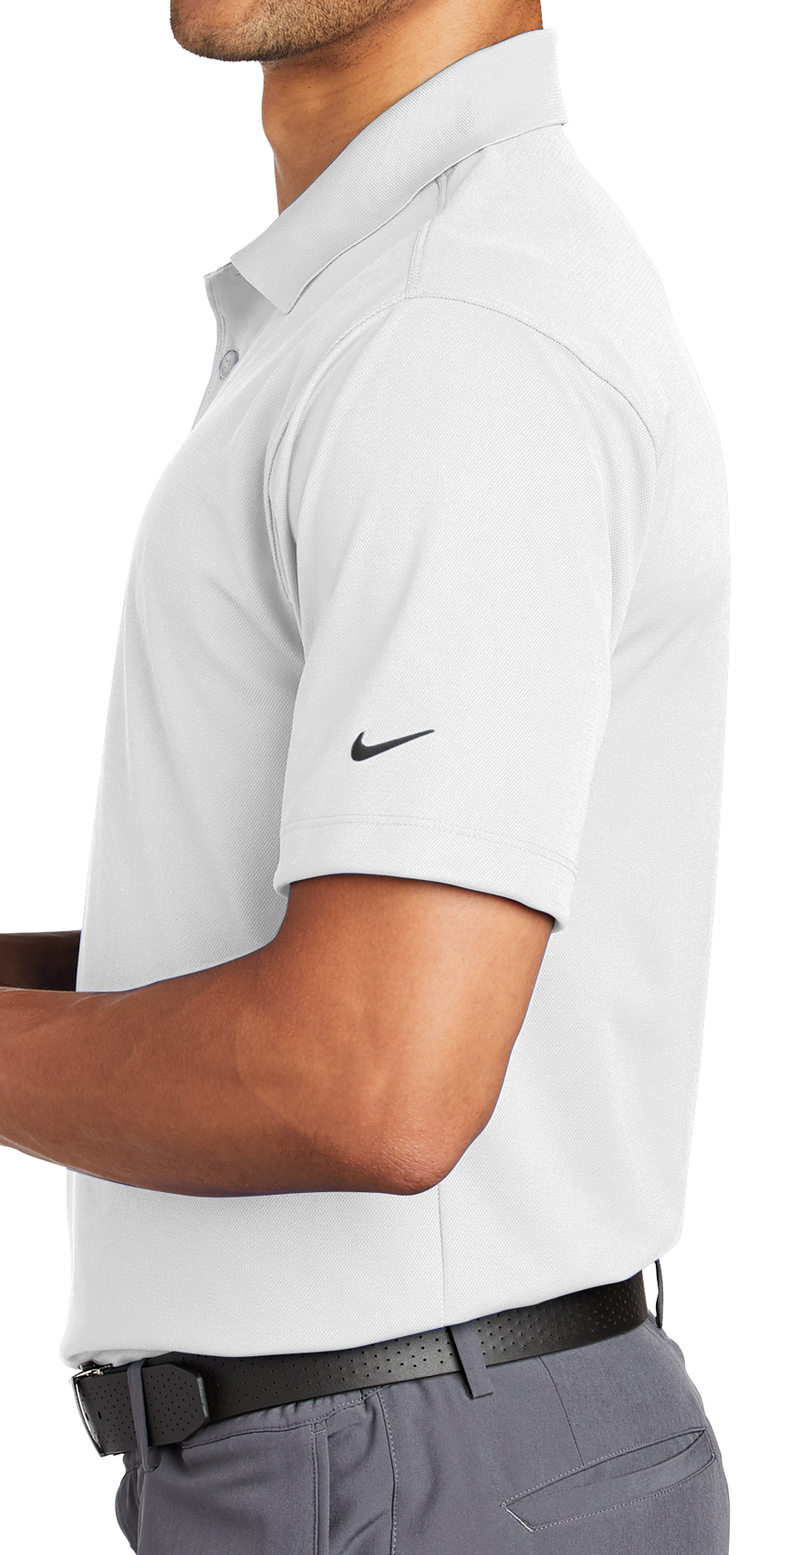 Nike [203690] Tech Basic Dri-FIT Polo. Live Chat For Bulk Discounts.